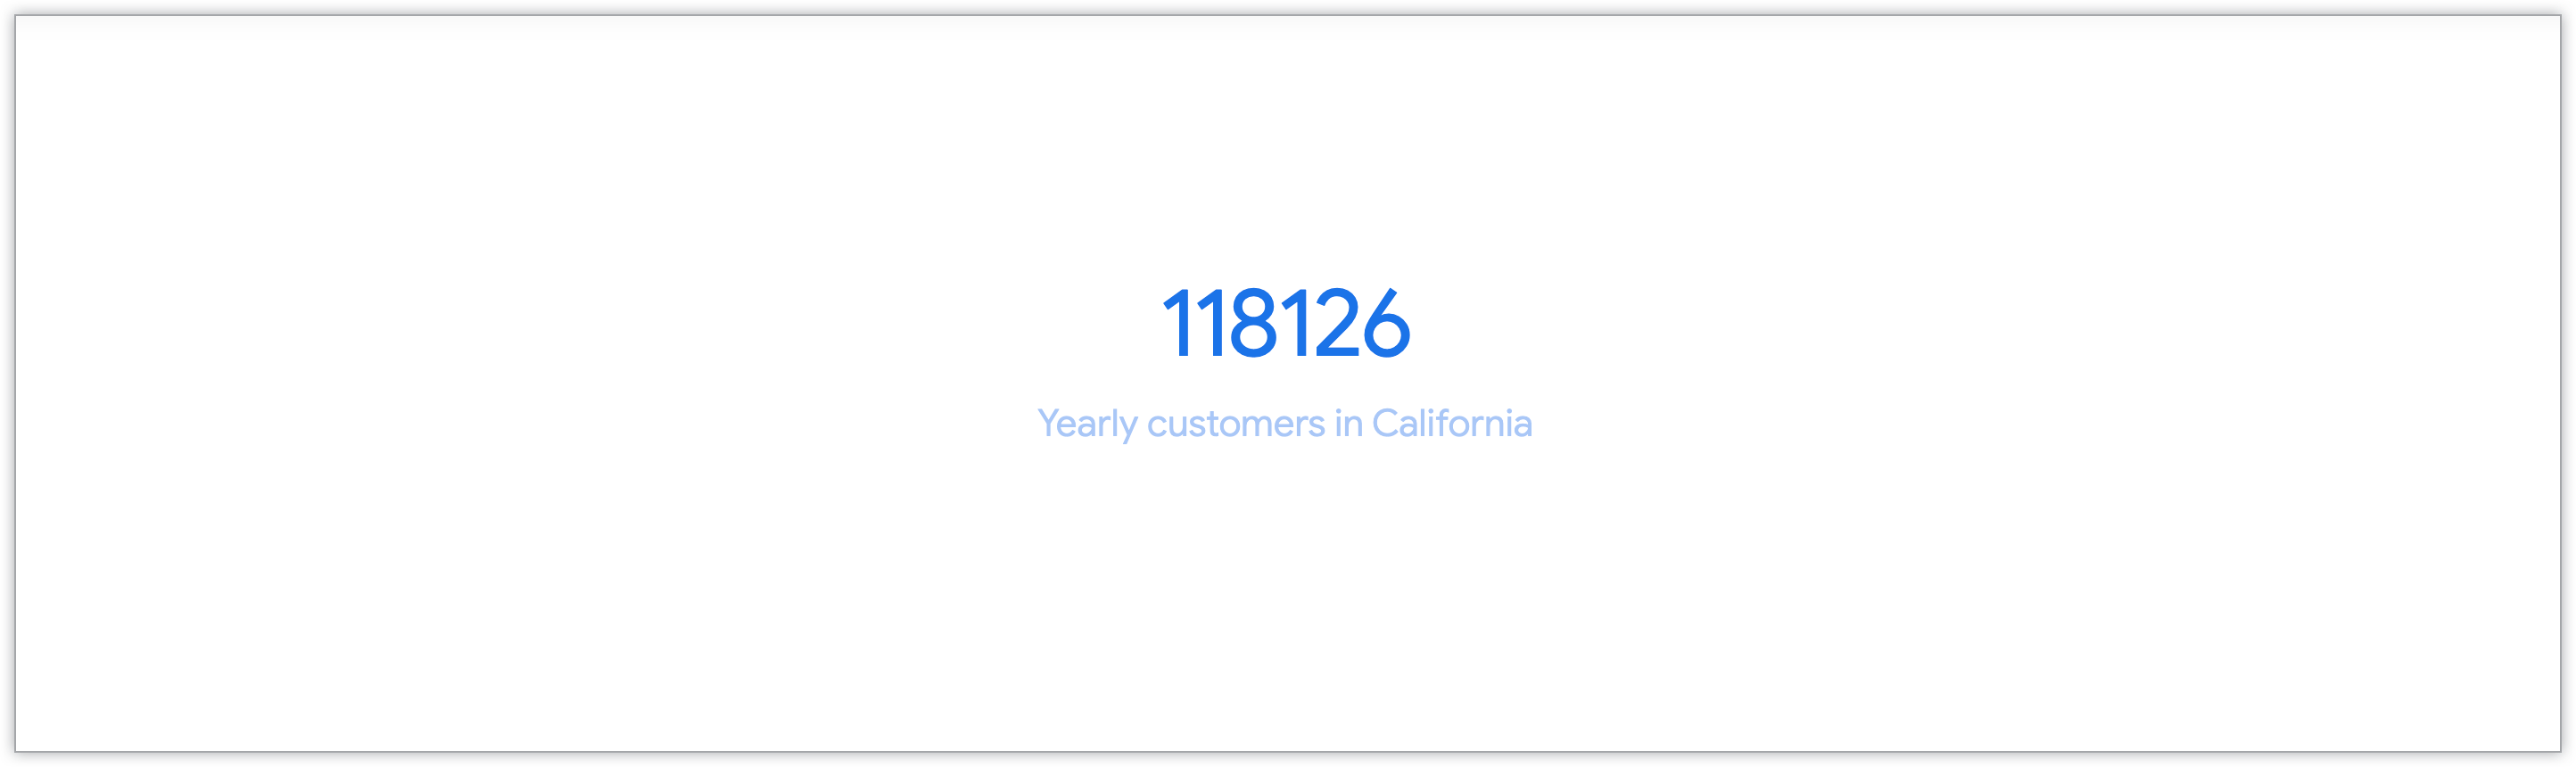 Gráfico de valor único que muestra la cantidad de clientes anuales provenientes de California.